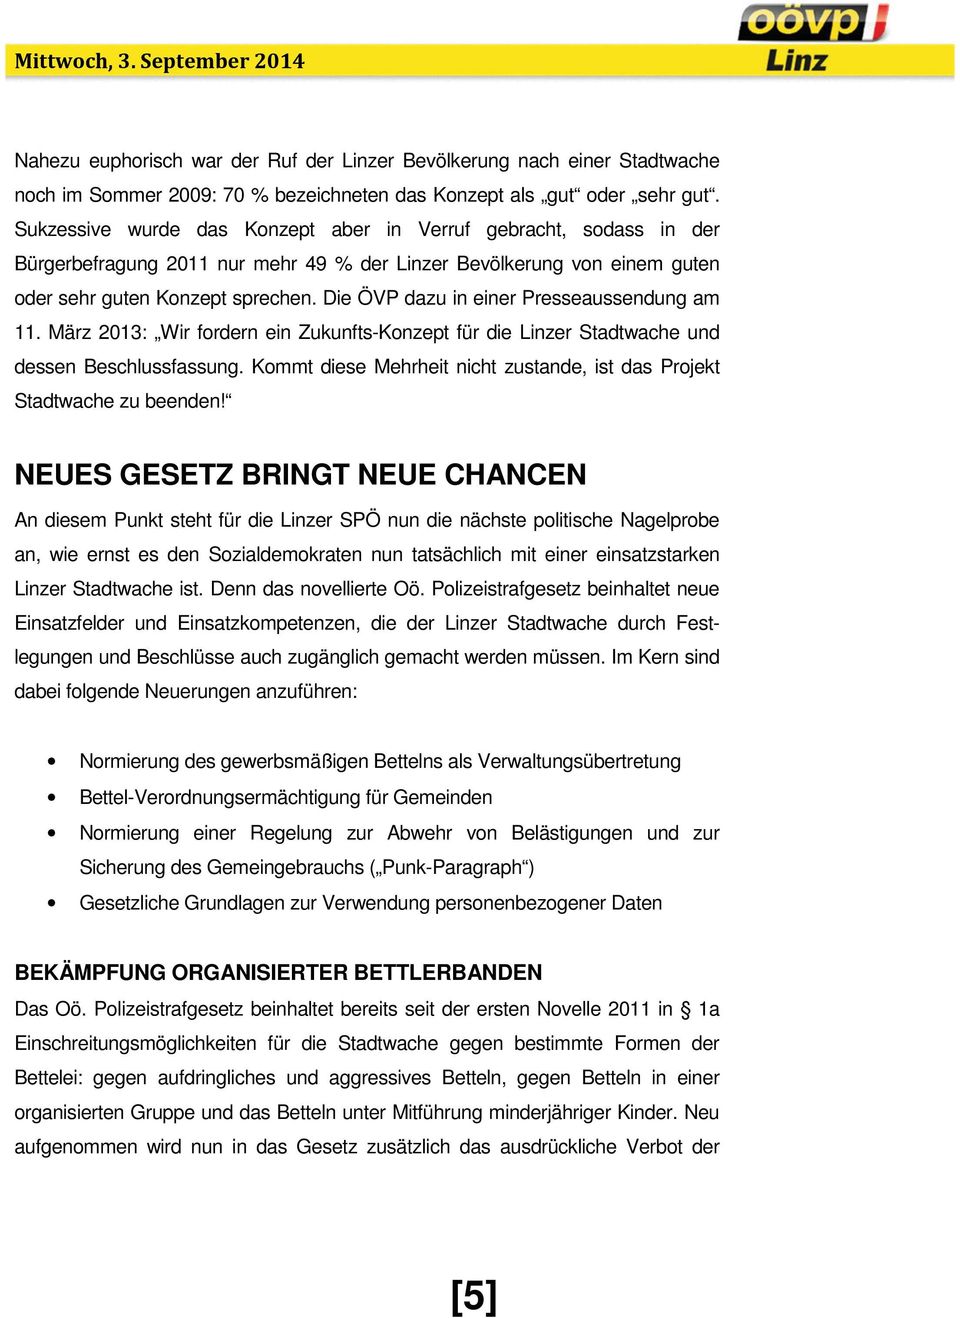 Die ÖVP dazu in einer Presseaussendung am 11. März 2013: Wir fordern ein Zukunfts-Konzept für die Linzer Stadtwache und dessen Beschlussfassung.